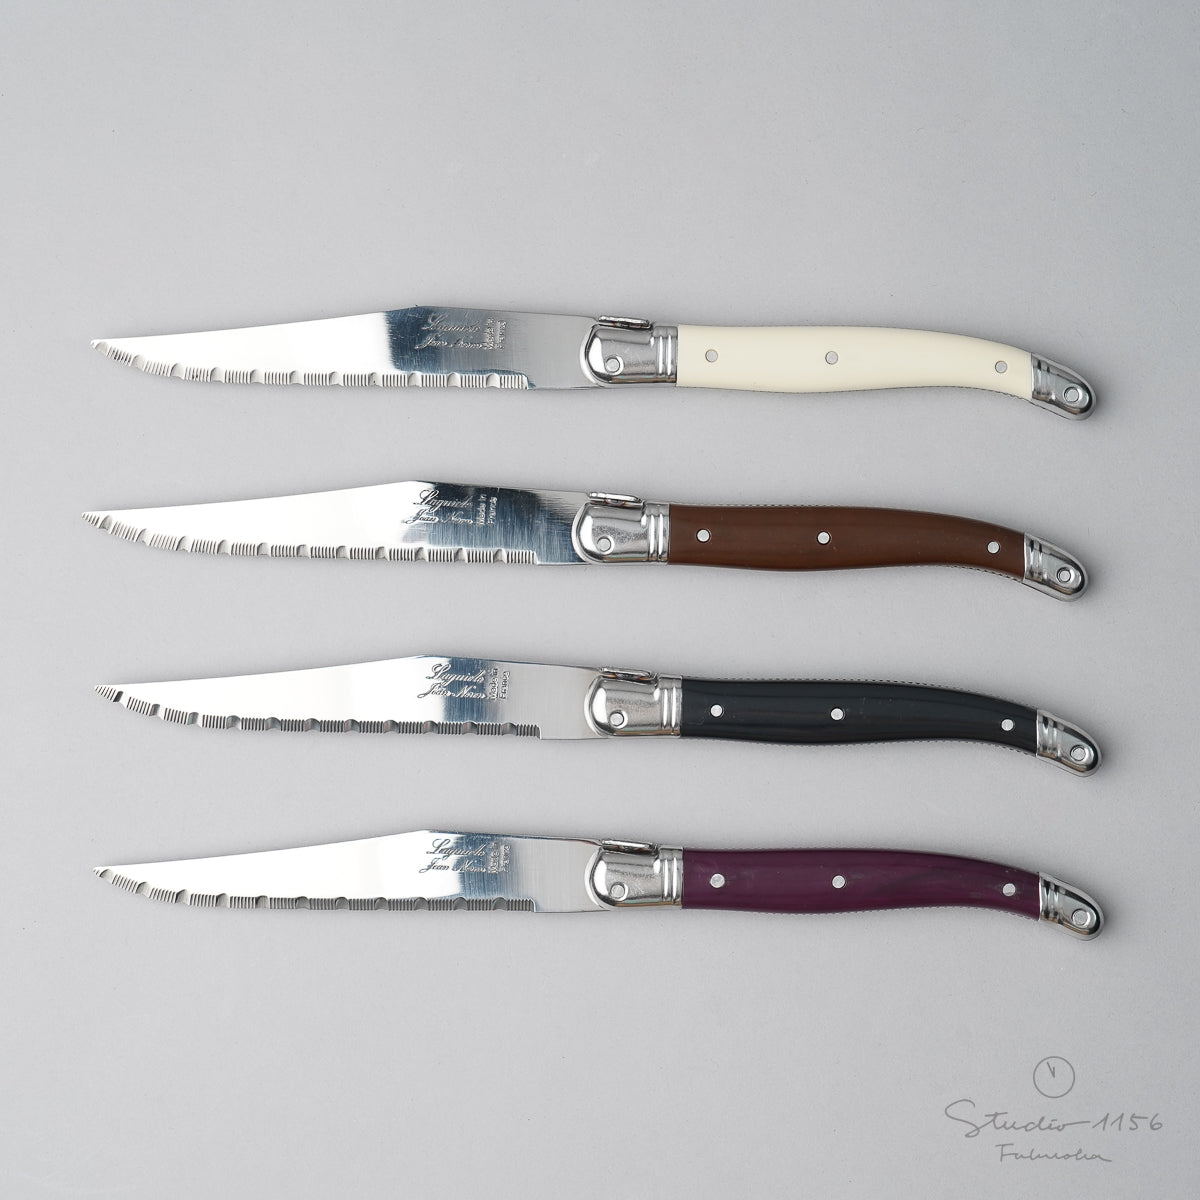 ジャン・ネロン ライヨール ステーキナイフ 23cm Cutlery-neron ナイフ